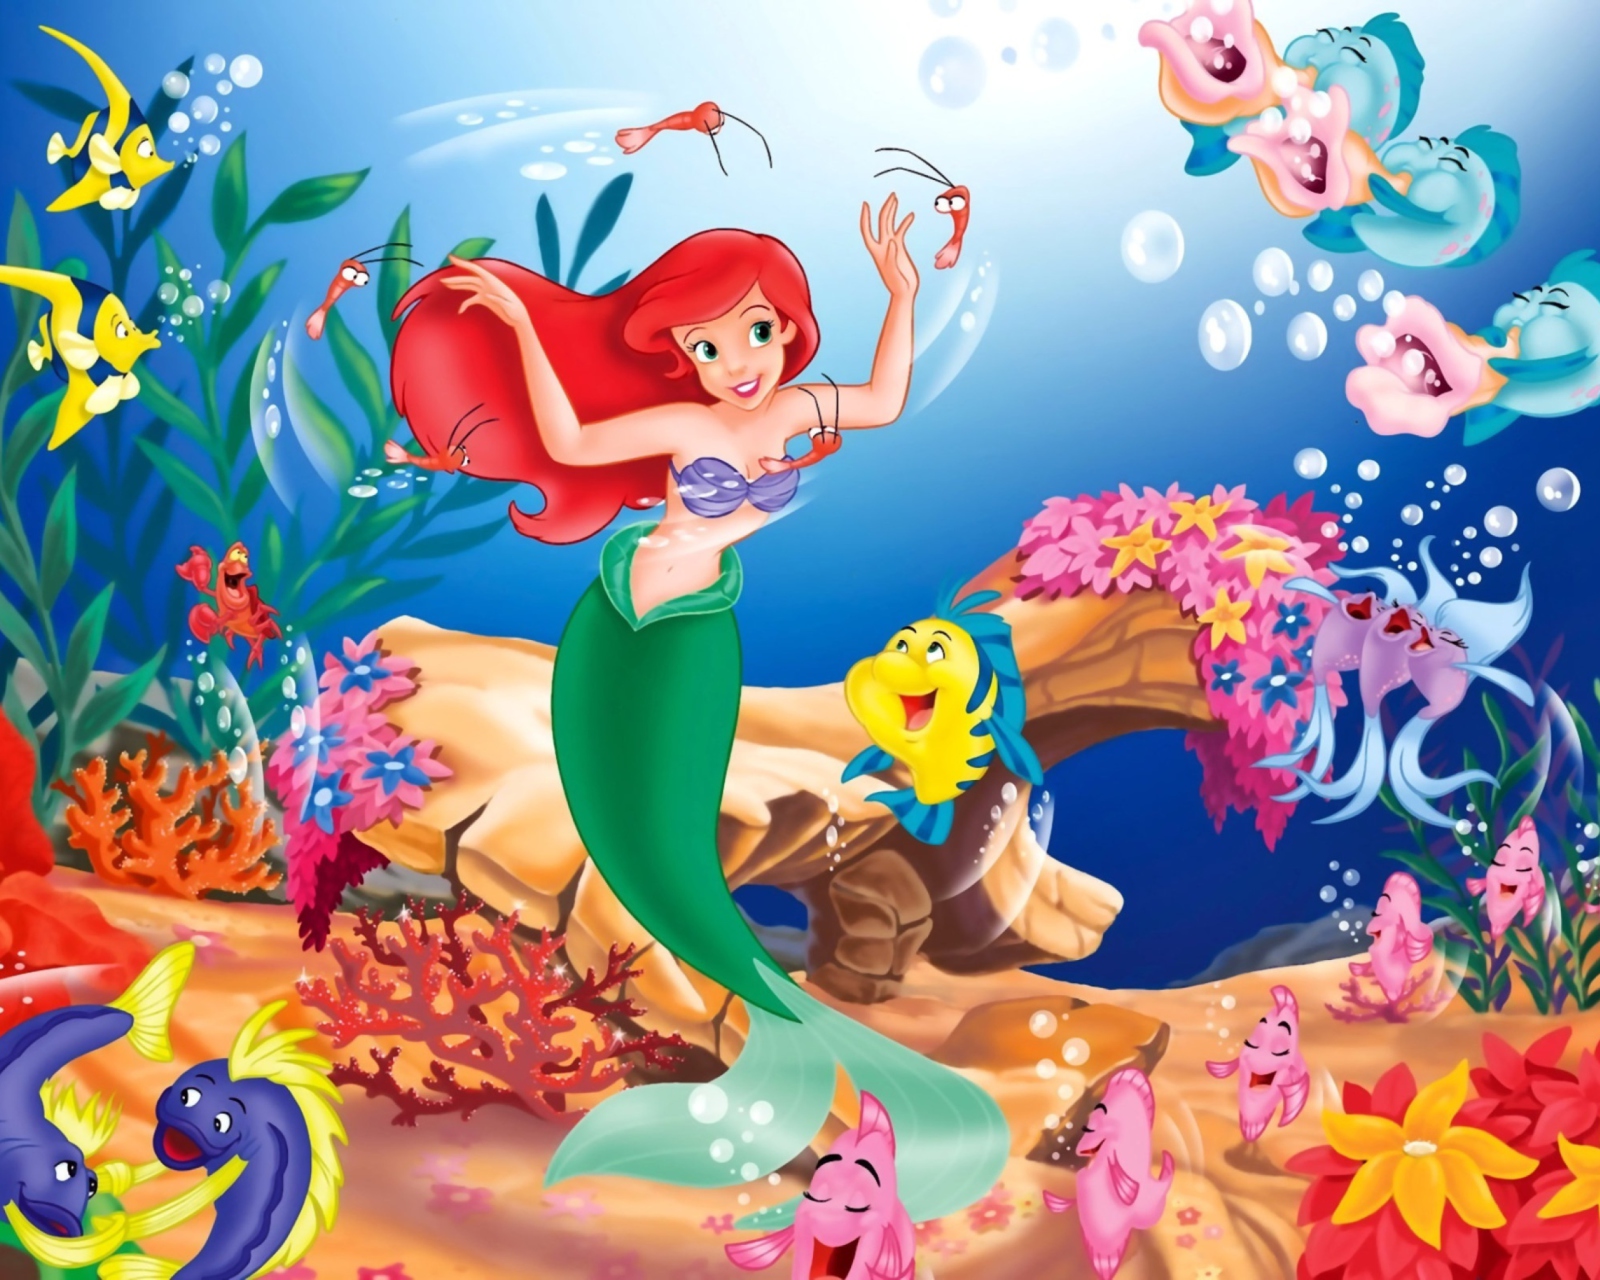 Little Mermaid wallpaper 1600x1280